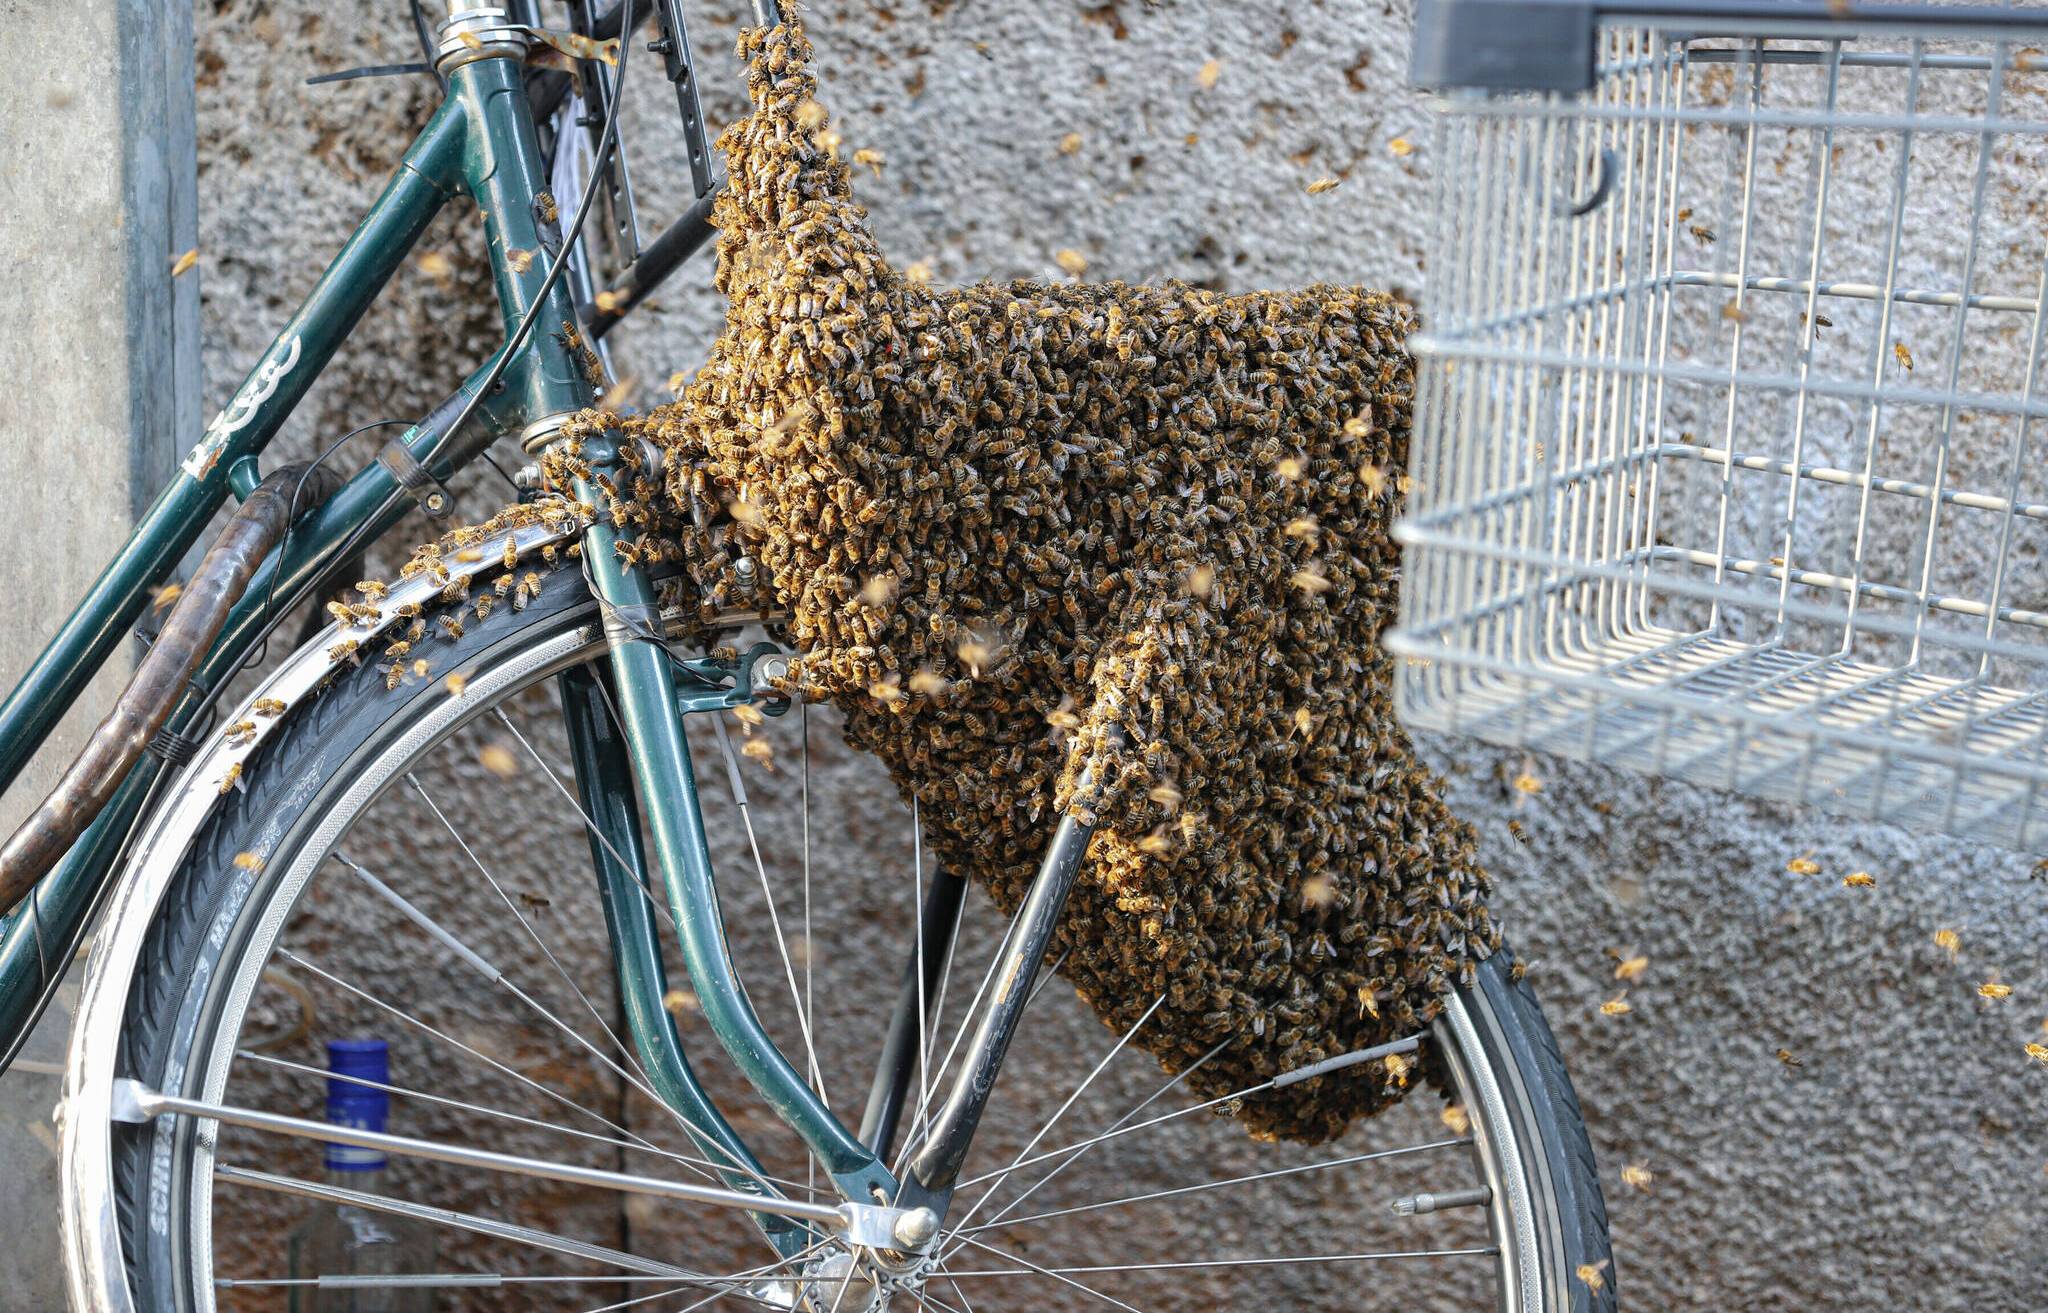 Bienenschwarm lässt sich auf Fahrrad nieder